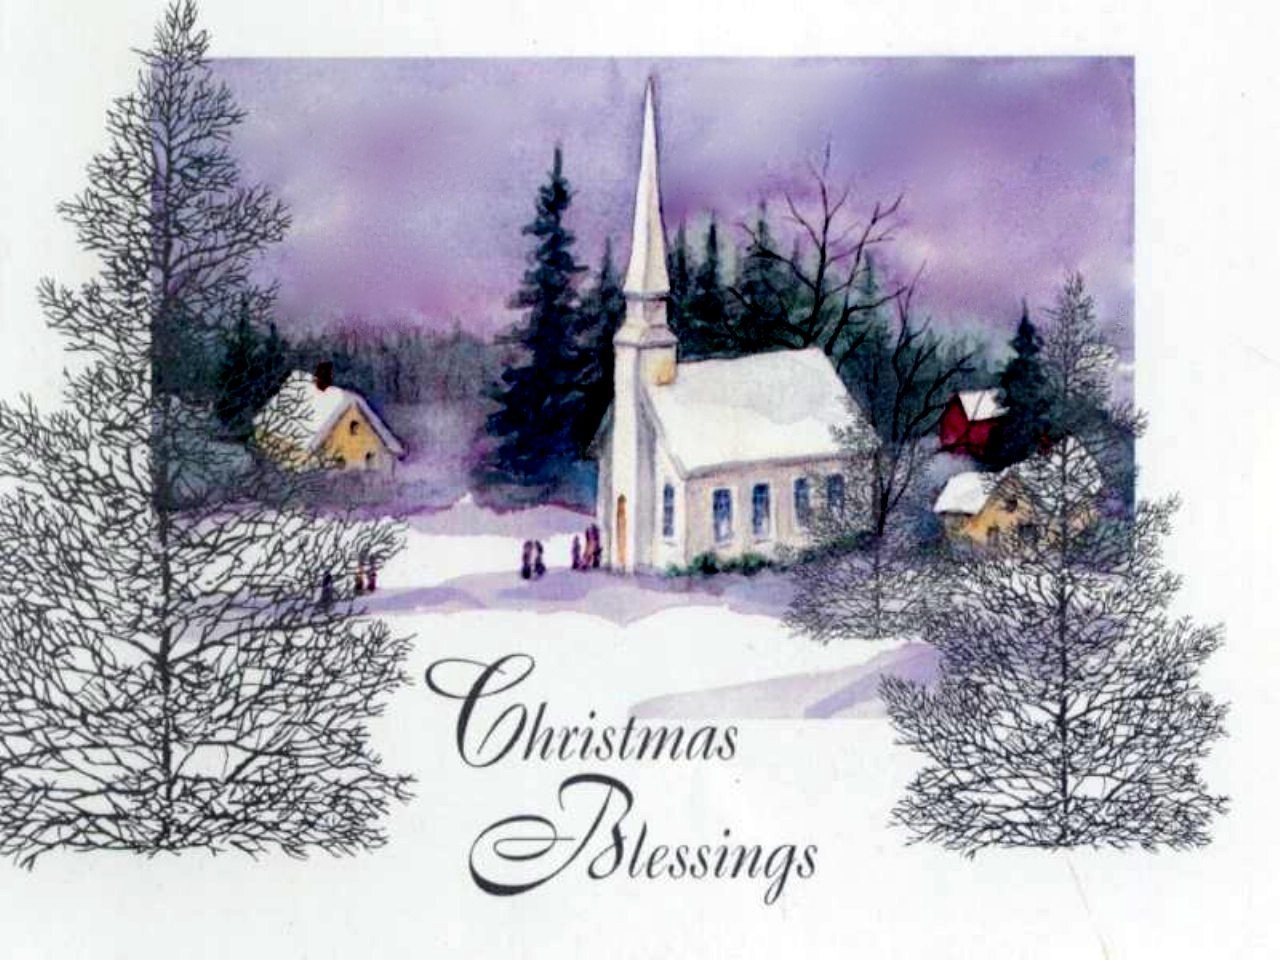 CHRISTMAS BLESSINGS wallpaper   ForWallpapercom